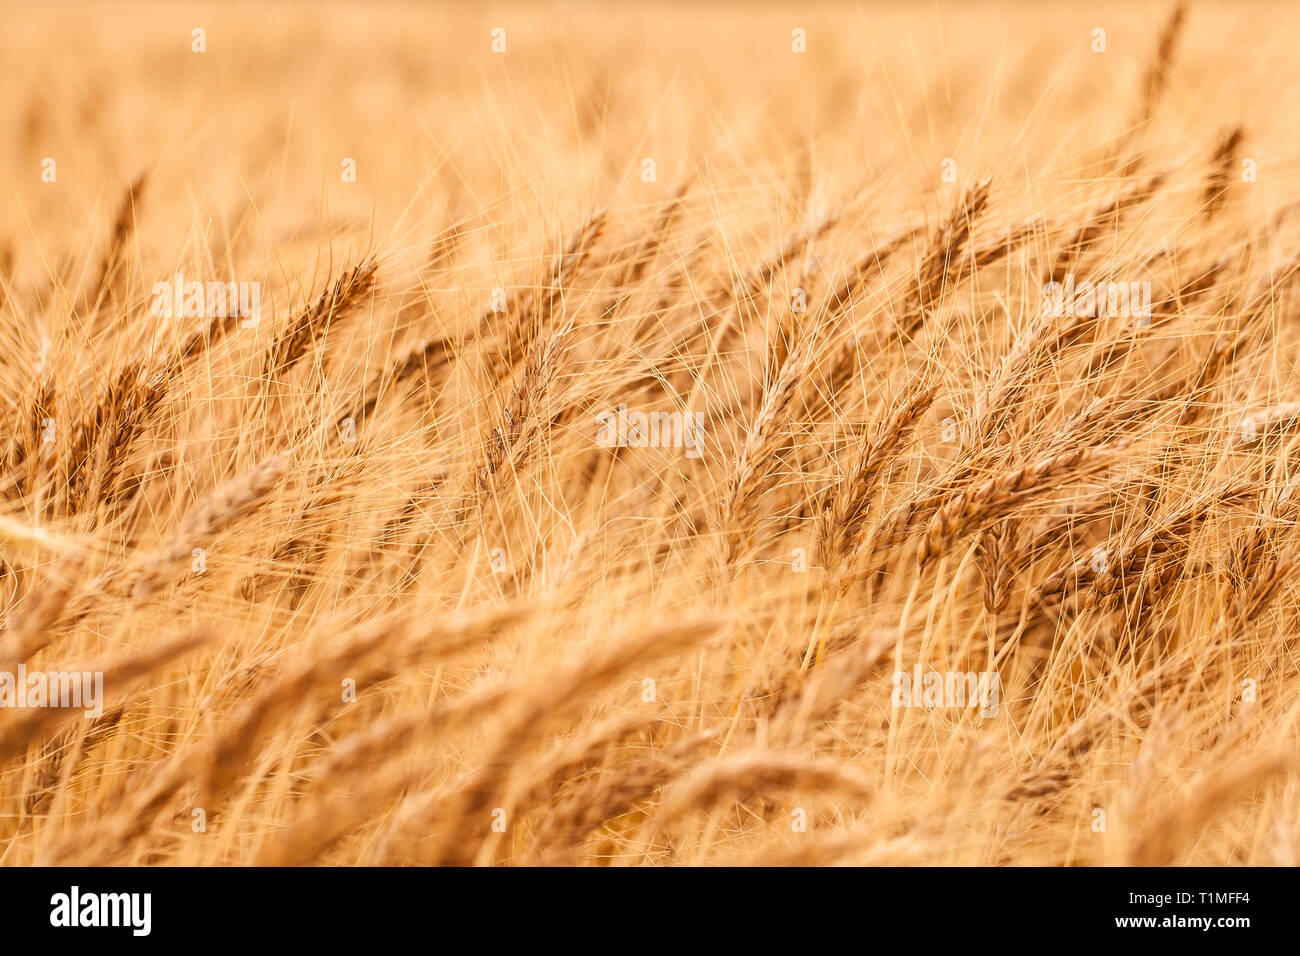 Golden image montrant des vagues d'écoulement du grain. L'herbe de blé dans la région de champ se remplit le cadre. Belle récolte fertile. Banque D'Images